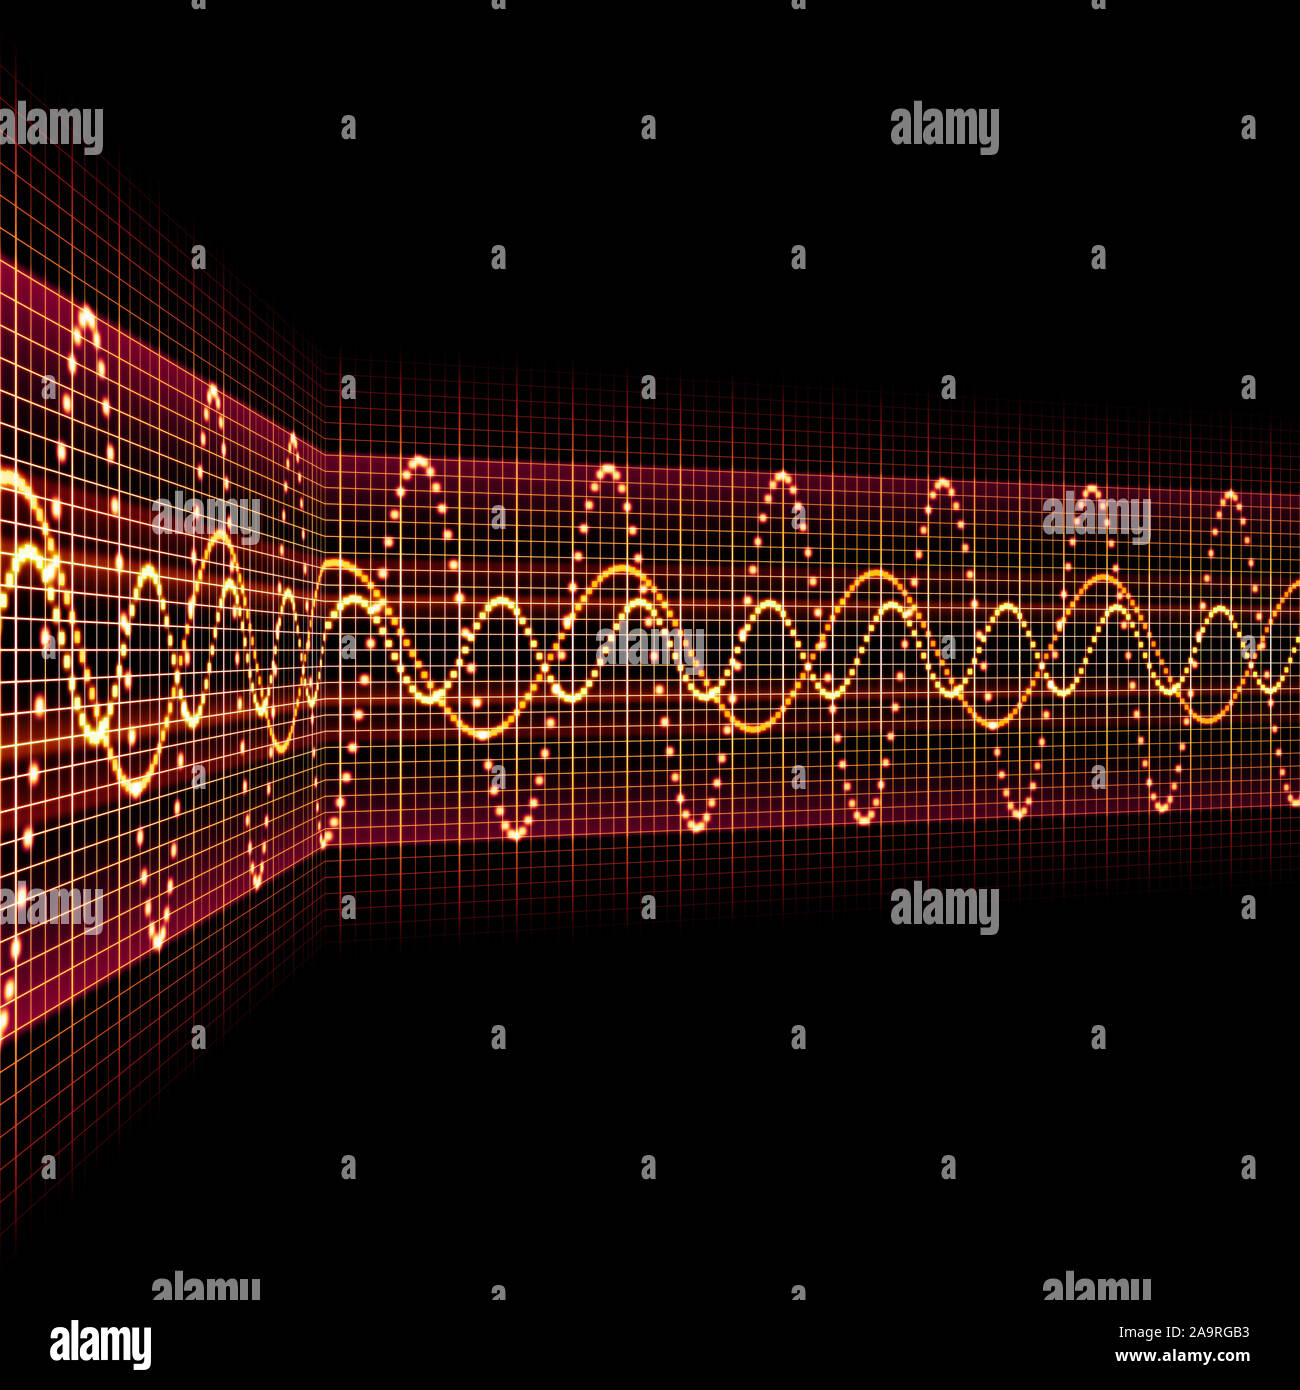 Ein Bild von einem schönen Sound wave Hintergrund Stockfoto